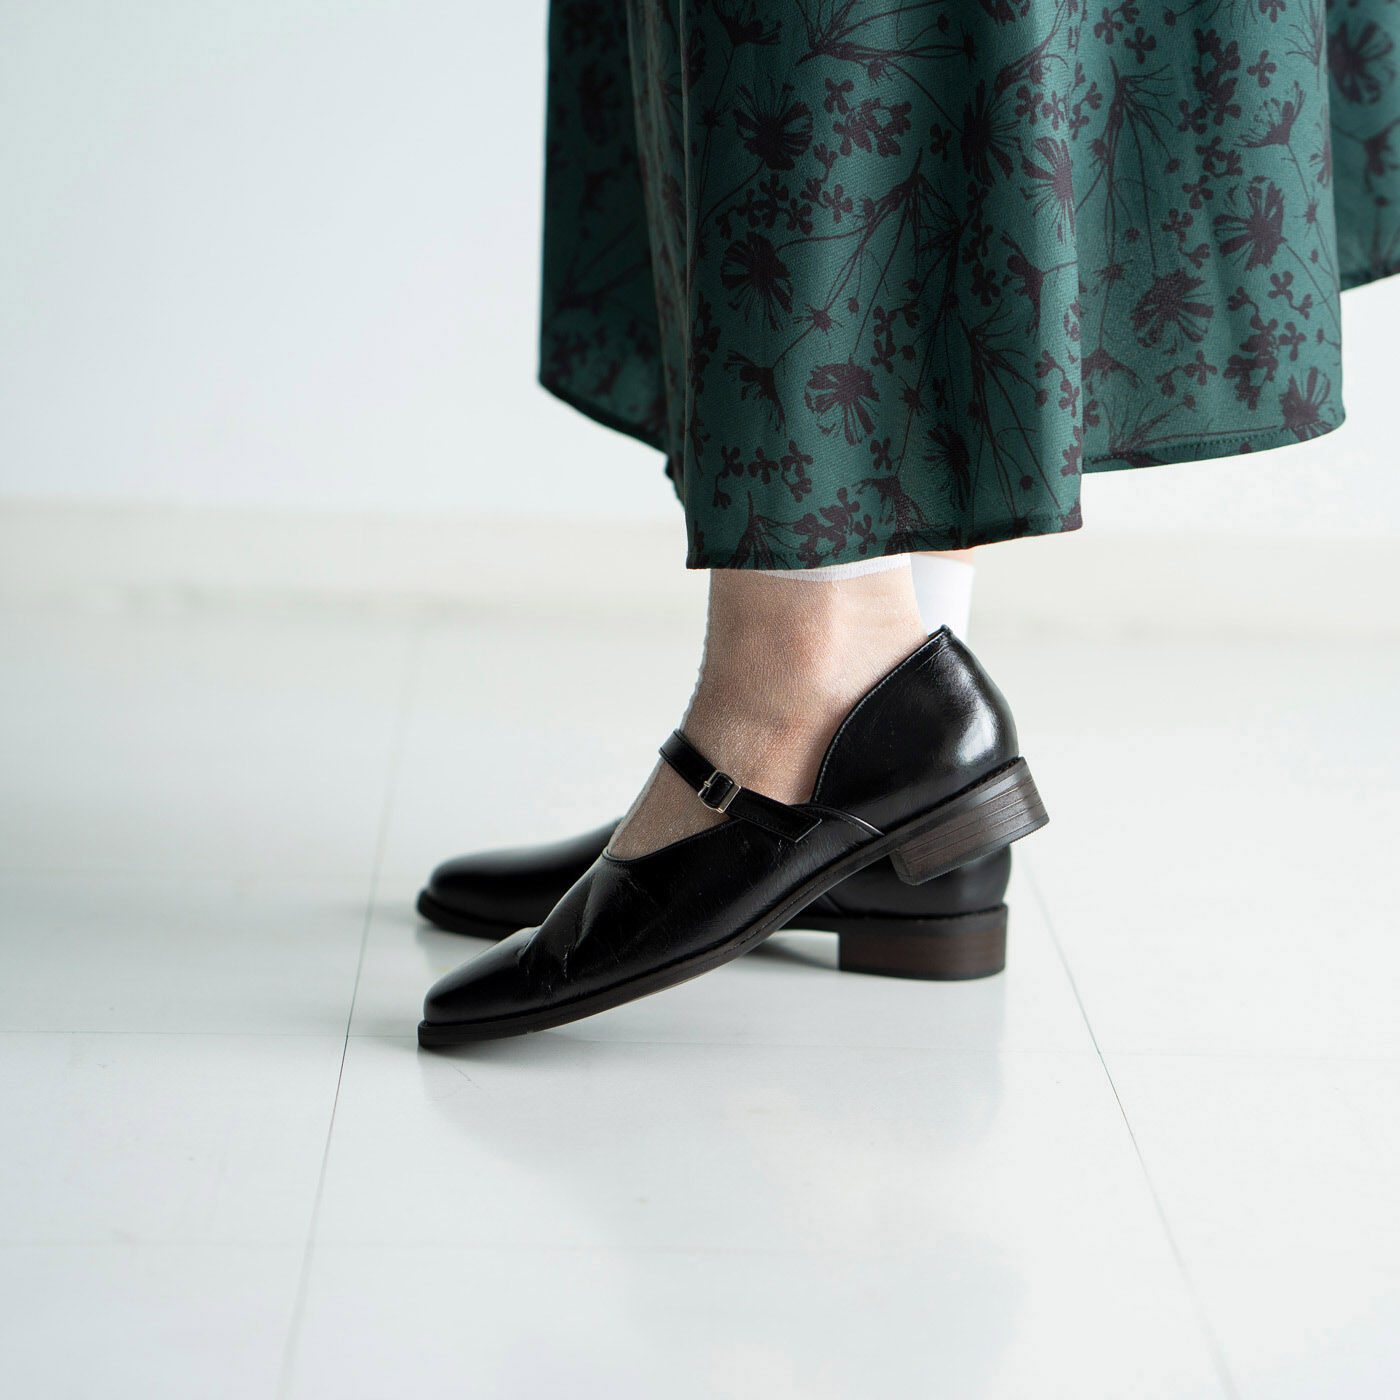 ＆Stories|靴デザイナーの理想で作った 職人本革のレジェルテシューズ〈ブラック〉|ほどよいヒール高で、パンツもスカートもバランスよく着こなせます。かかとのホールド感にもこだわりました。